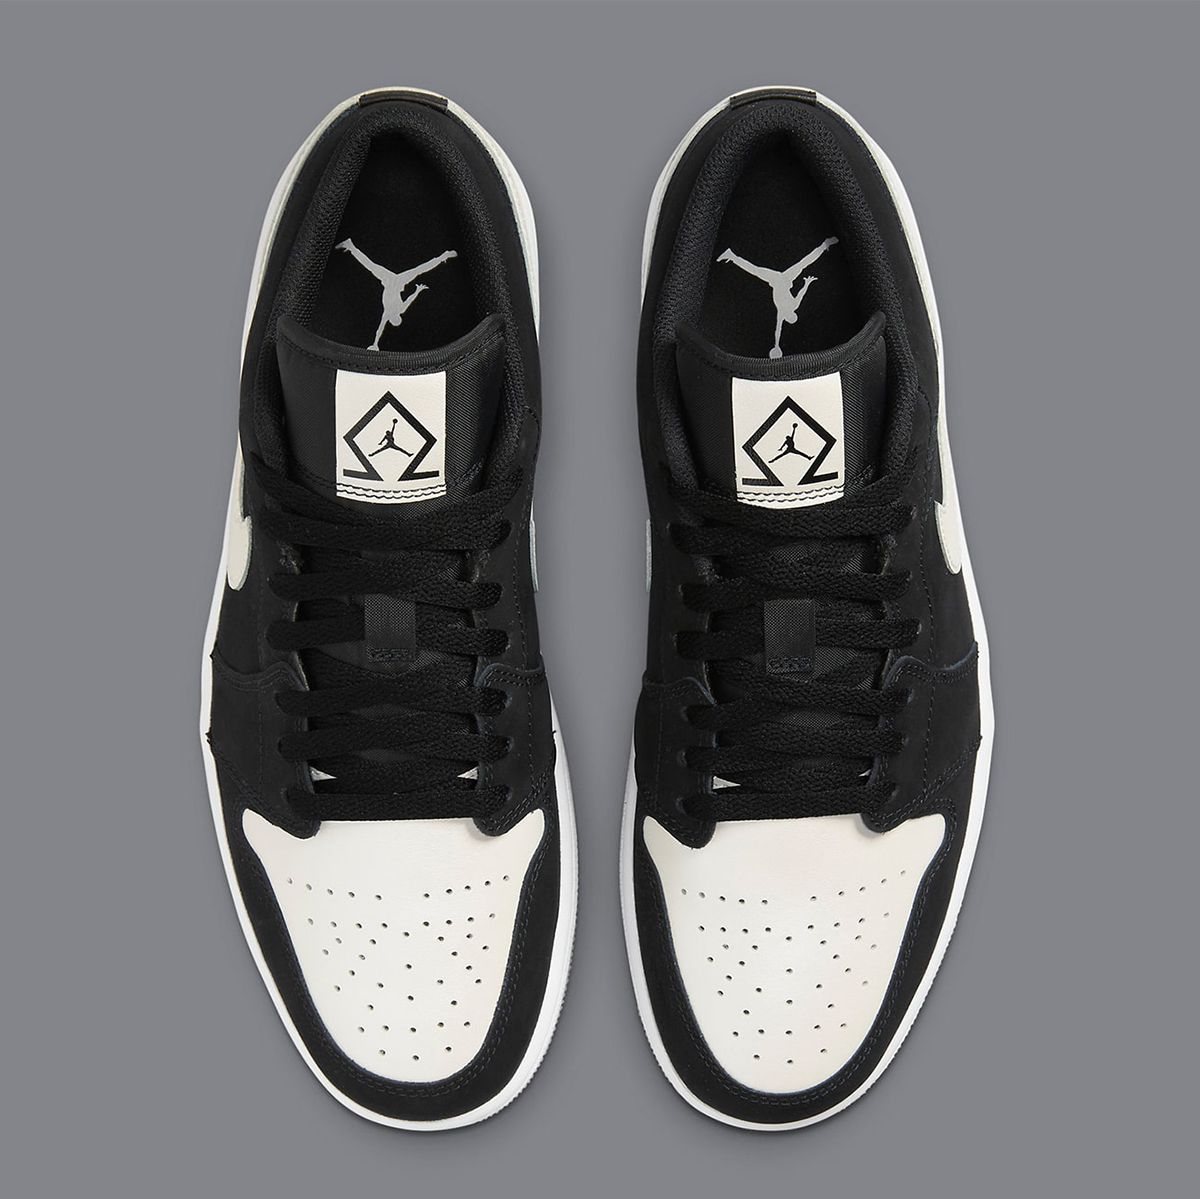 The Air Jordan 1 Low “Diamond” Drops February 9 | House of Heat°